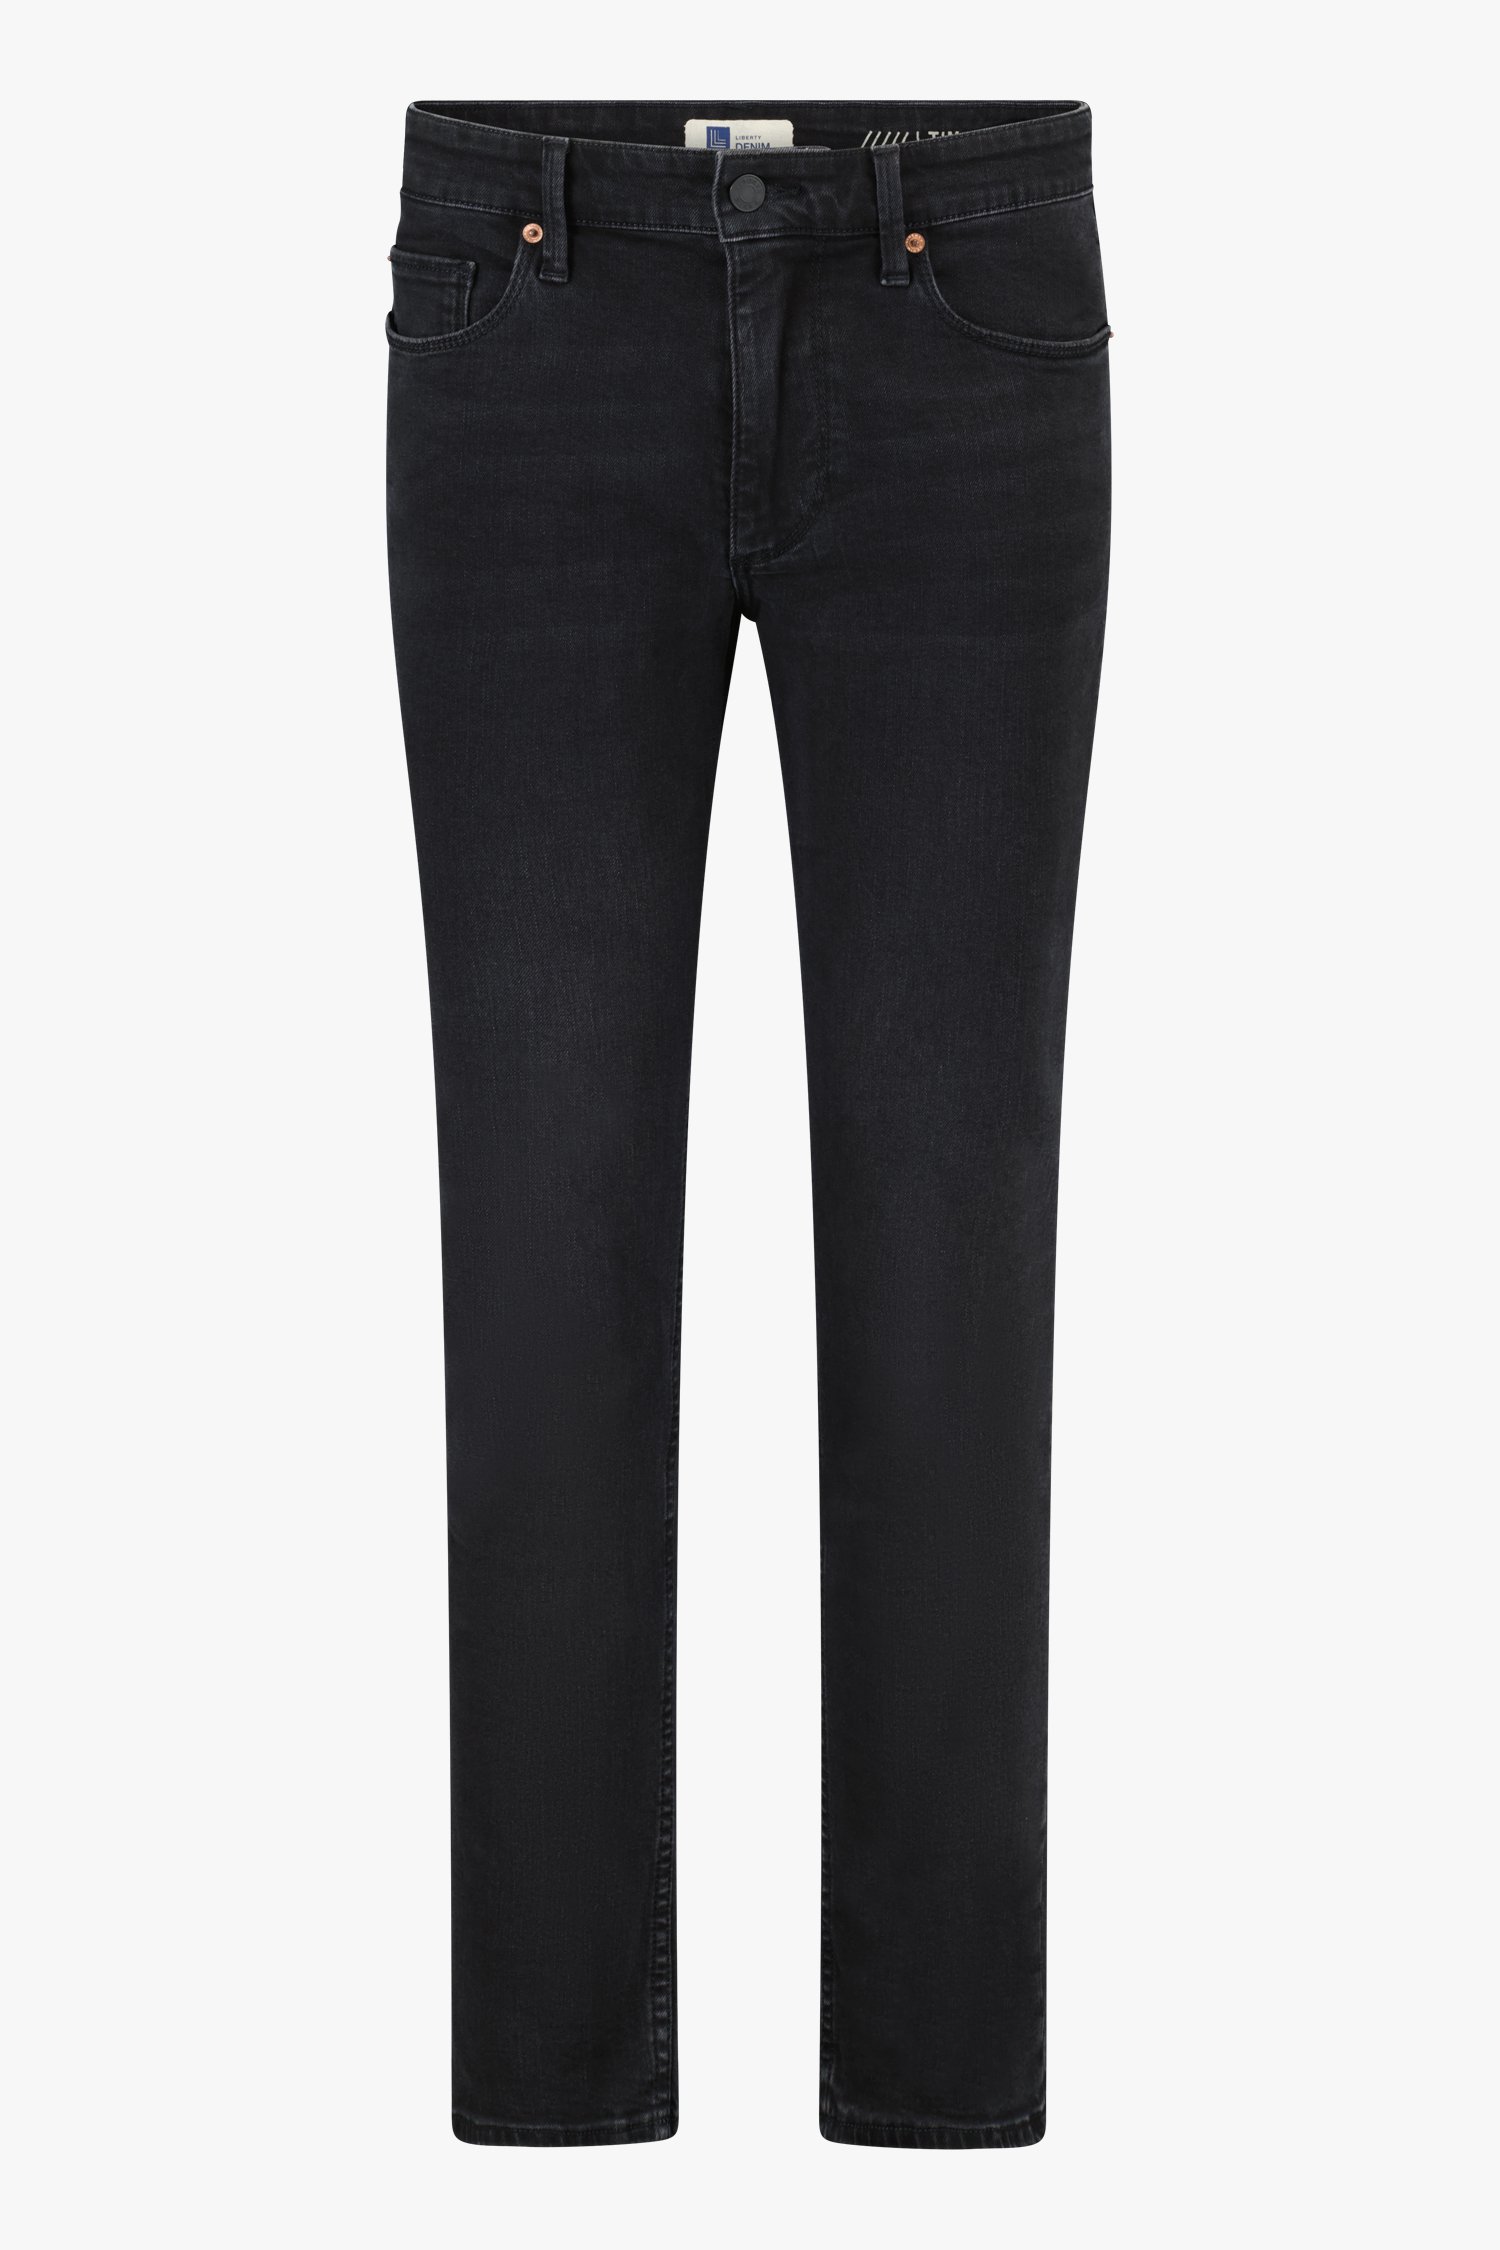 Zwarte jeans - Tim - slim fit- L34 van Liberty Island Denim voor Heren